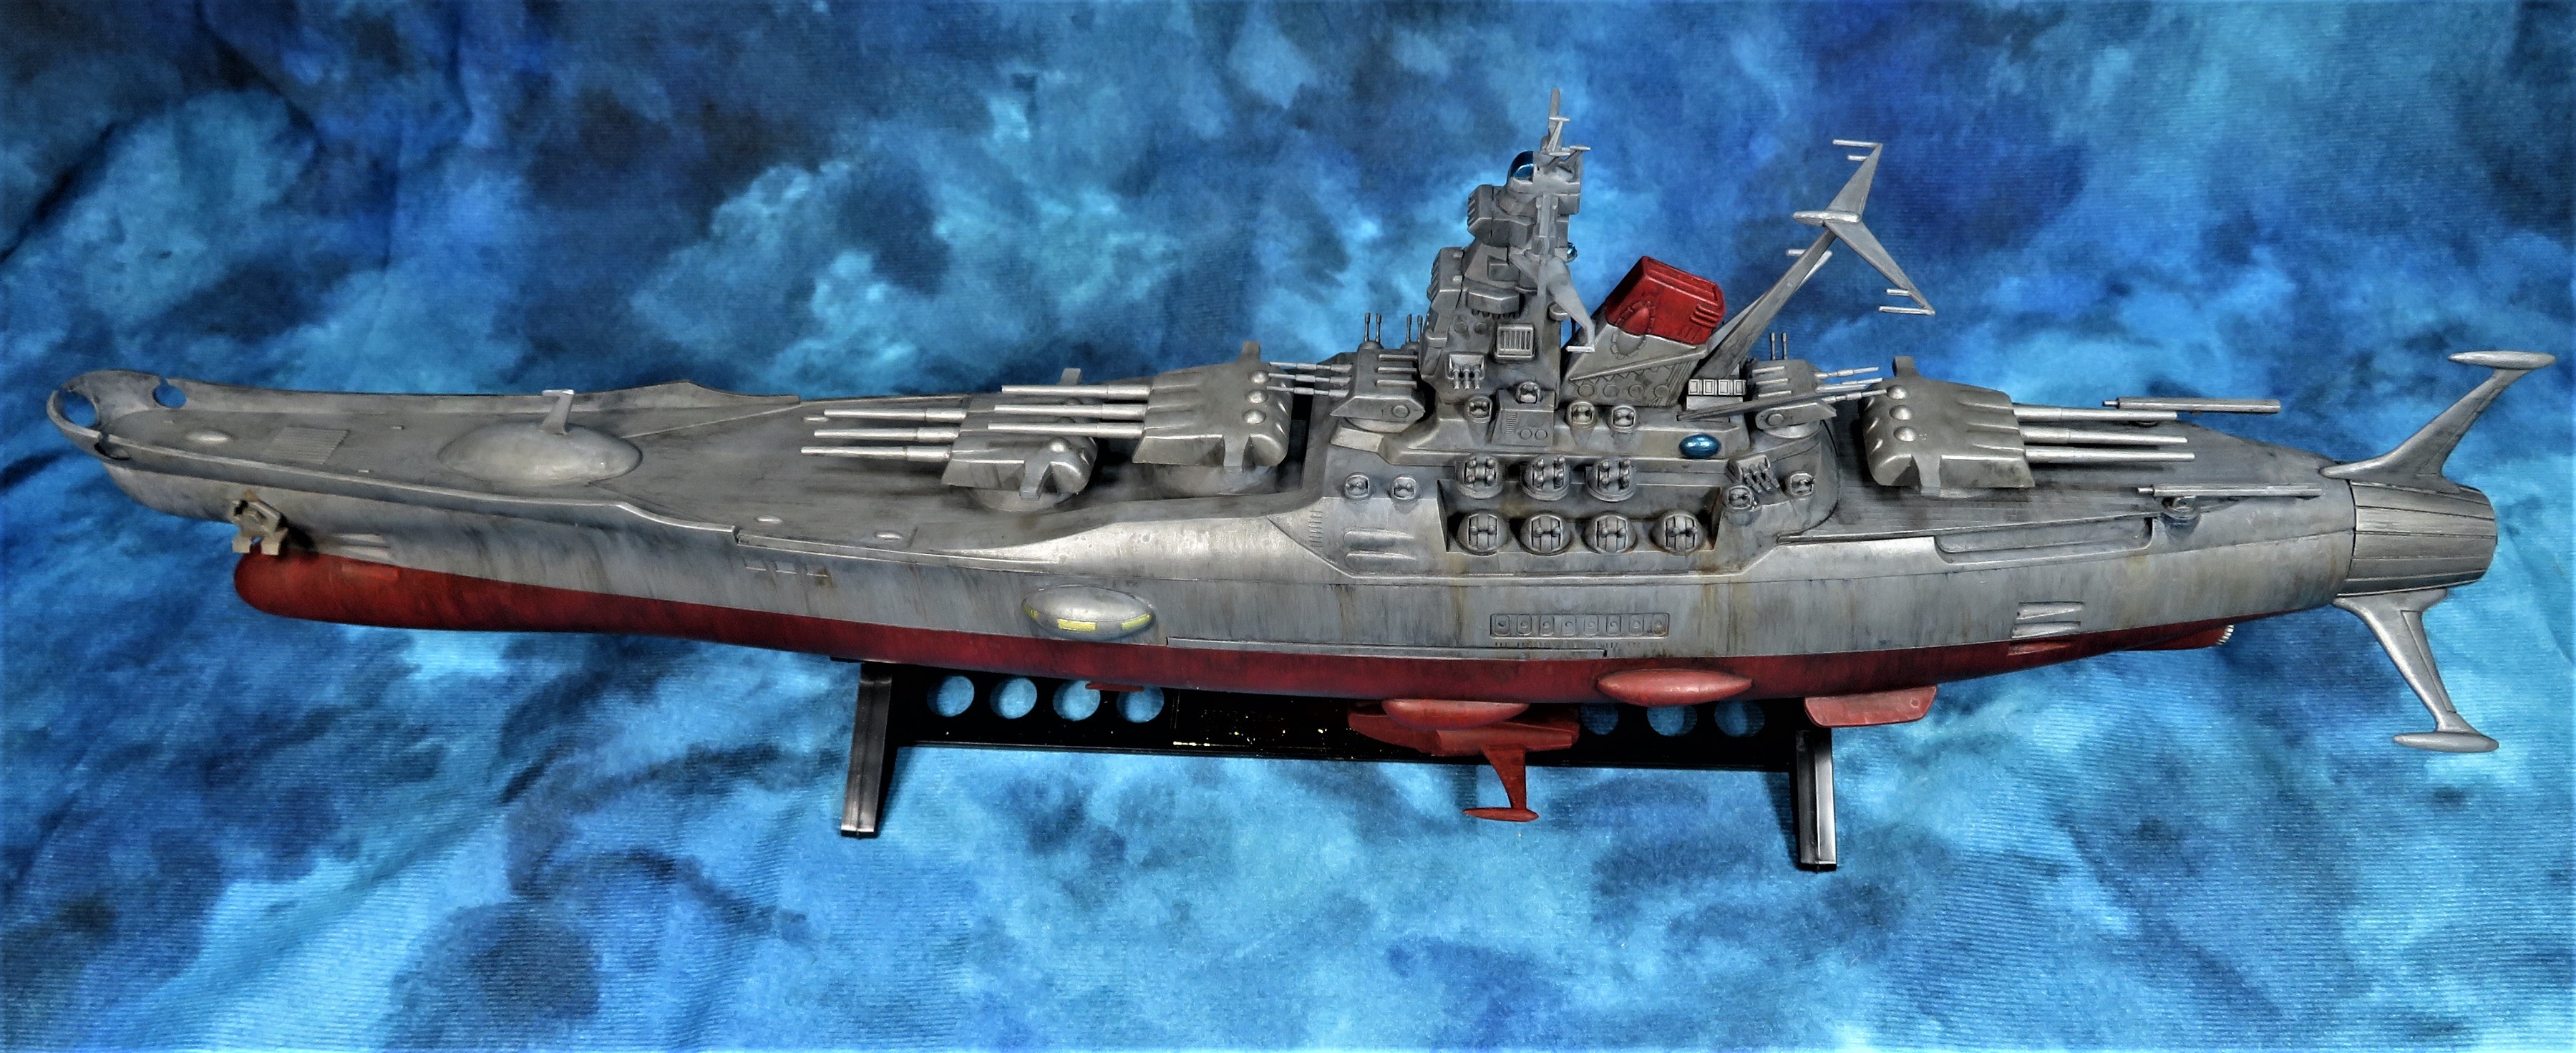 バンダイ1/500 宇宙戦艦ヤマト コズミックモデル - モデログラード 